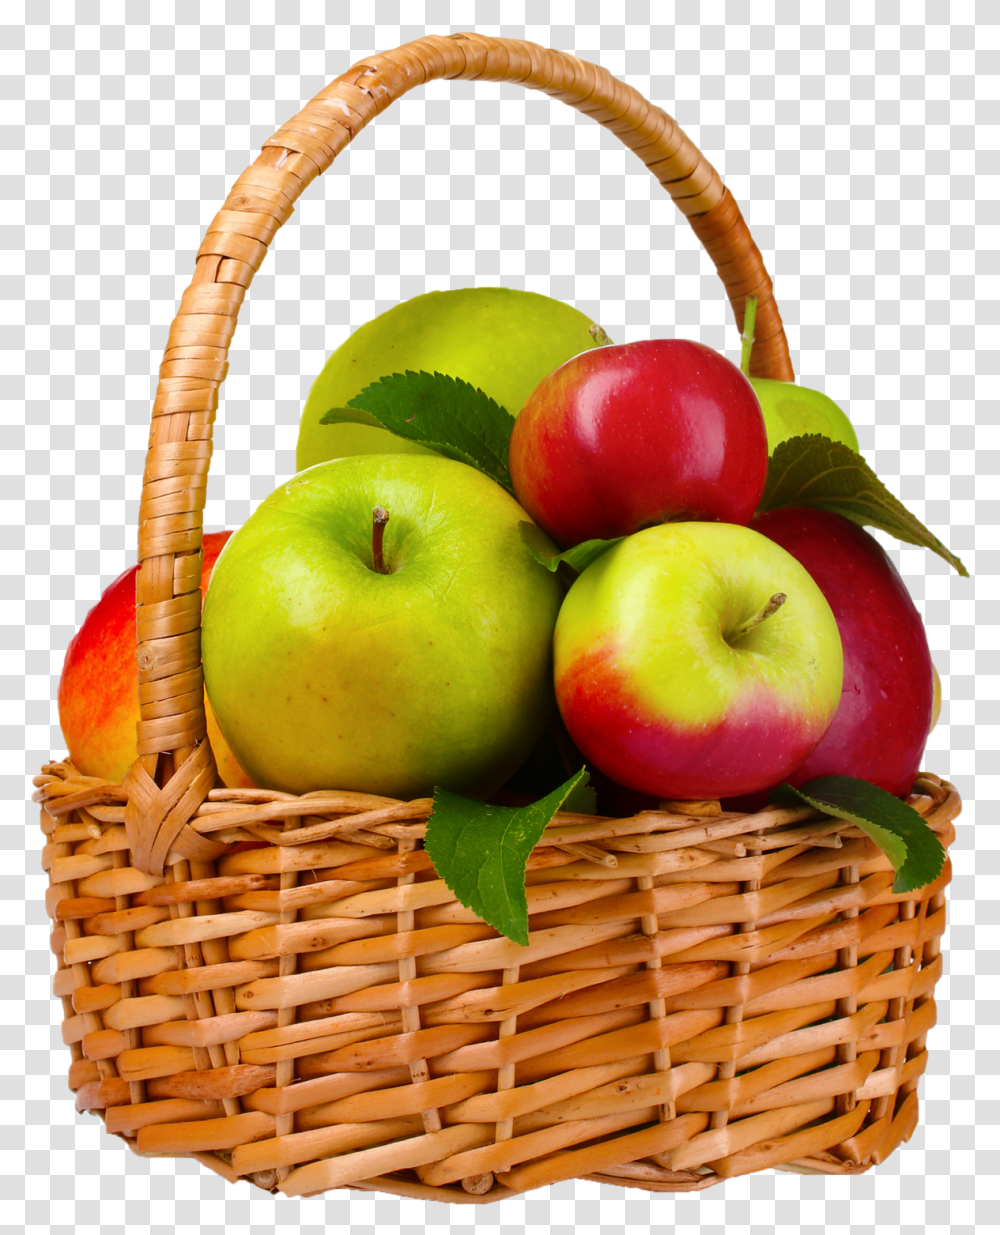 Apple Images Background Play Basket Of Apples, Plant, Fruit, Food, Shopping Basket Transparent Png